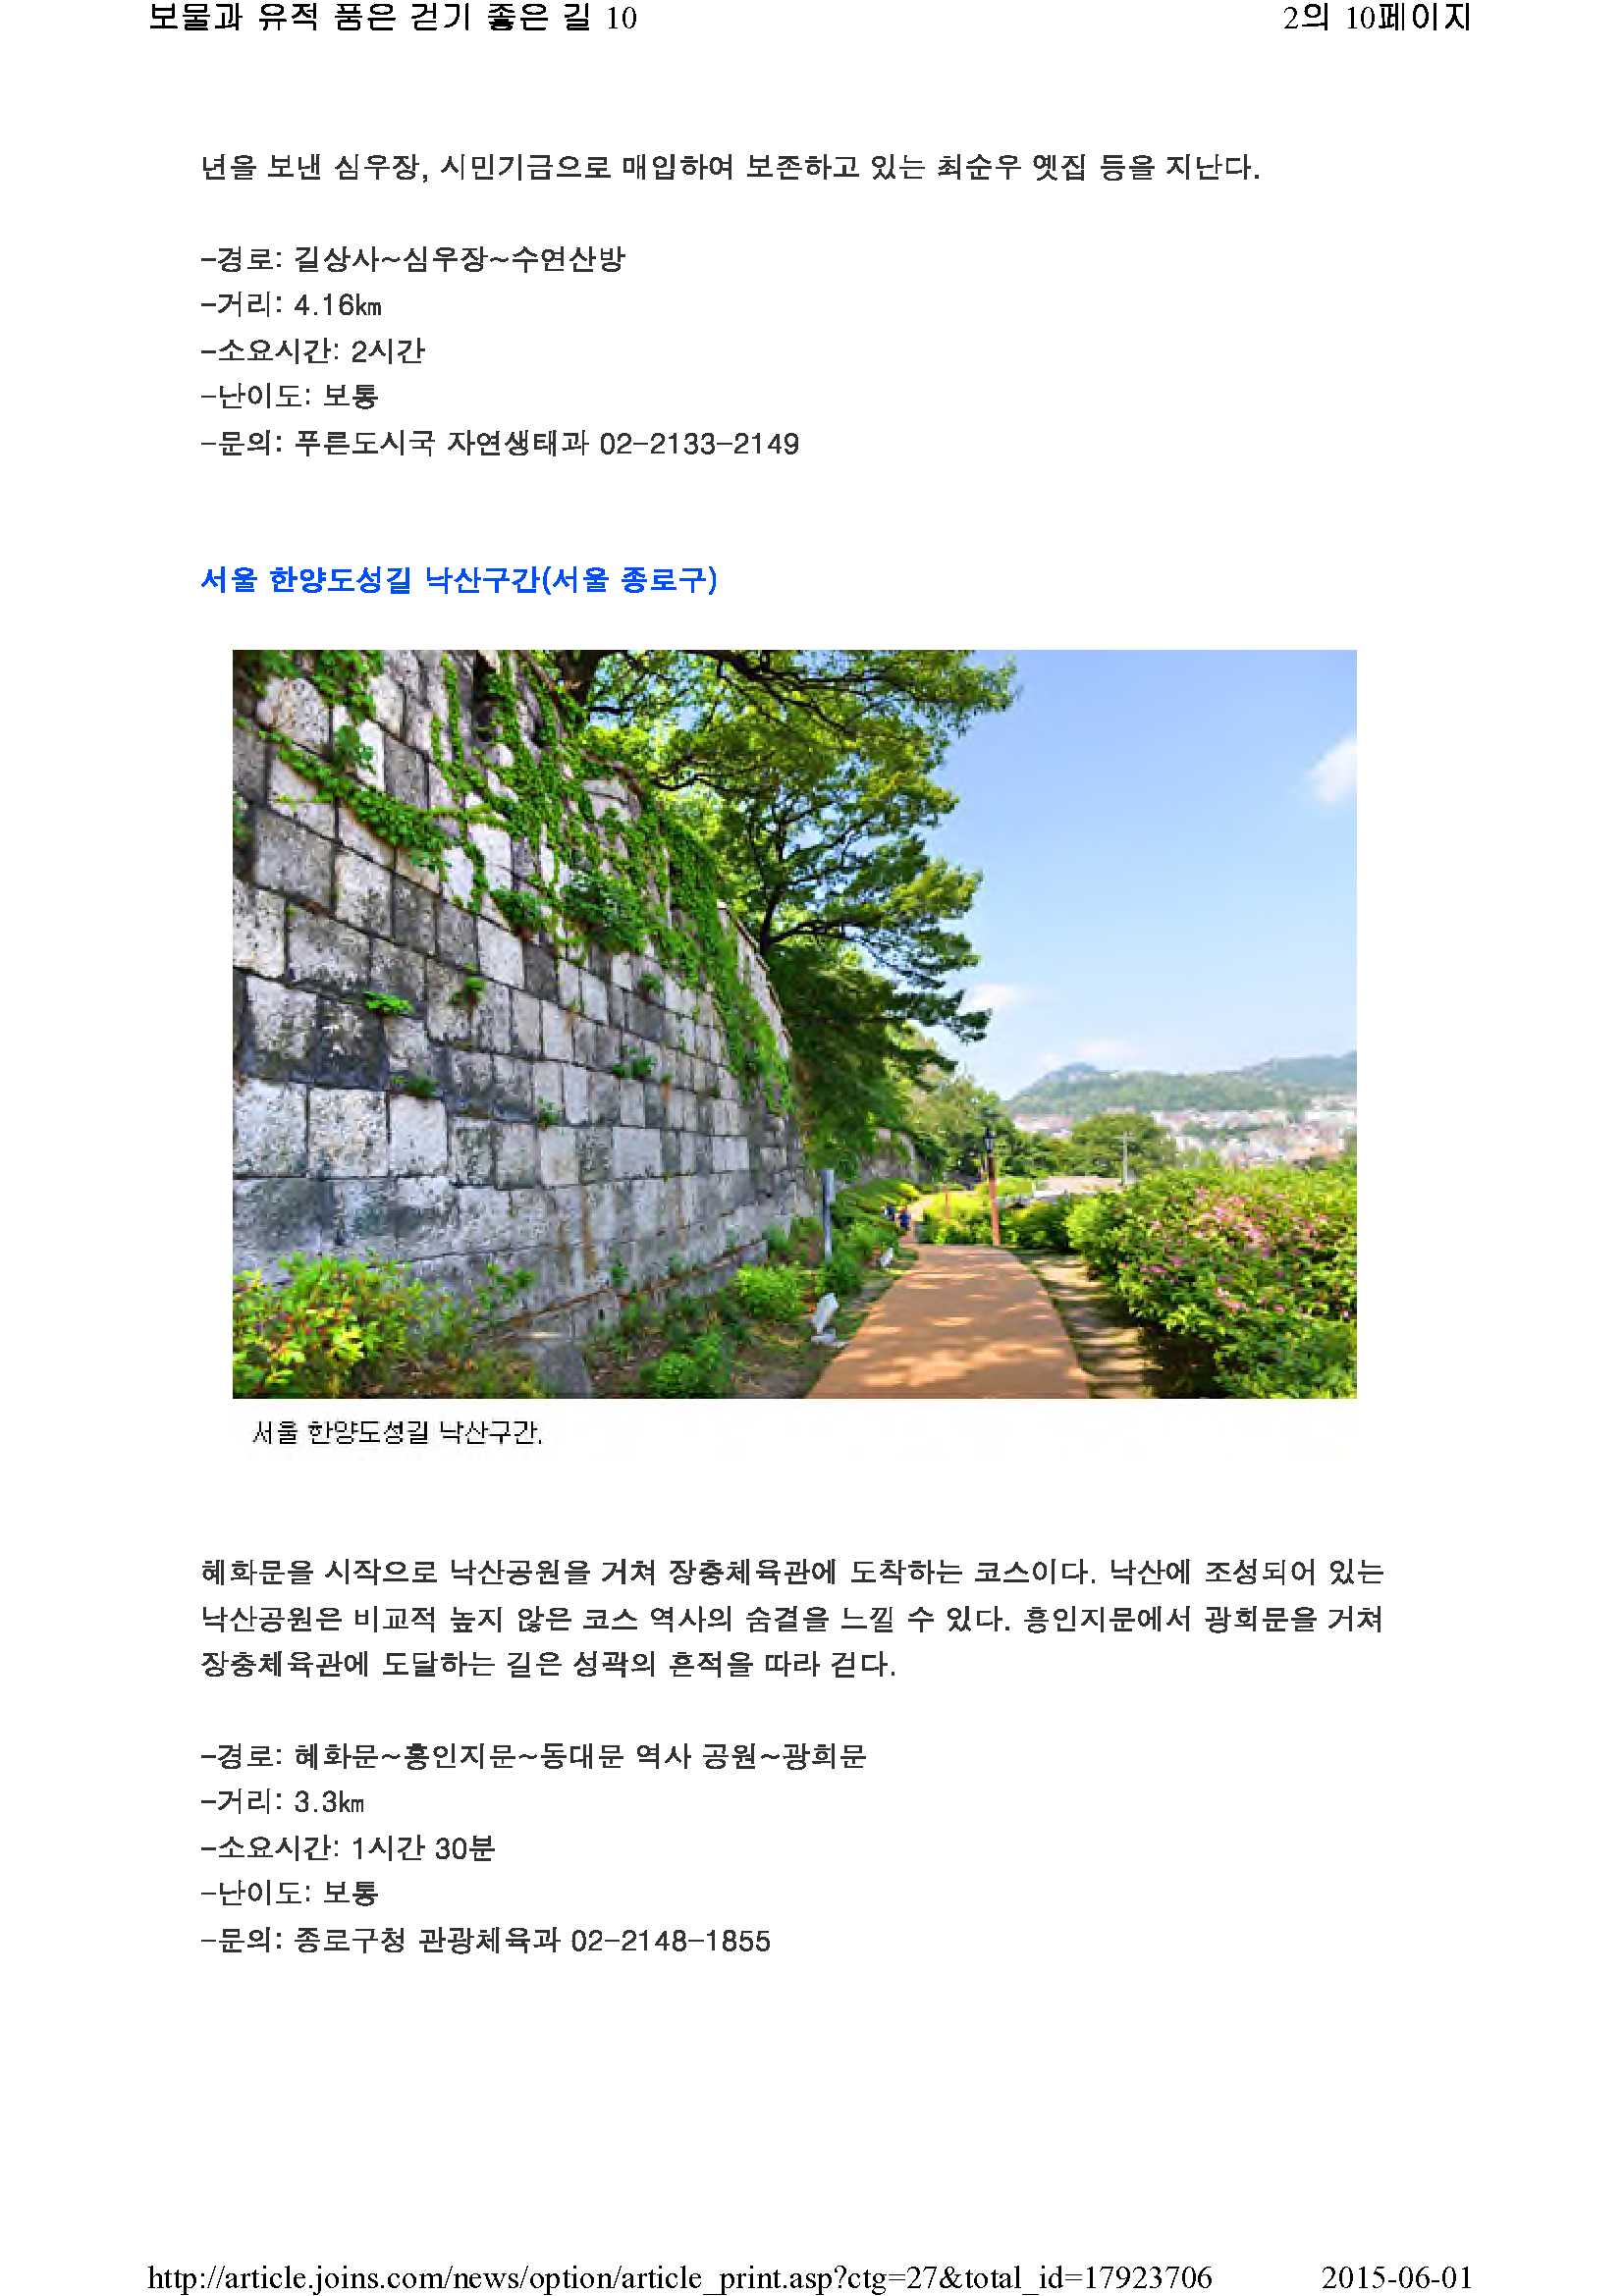 보물과 유적 품은 걷기 좋은 길 10(중앙일보)_2.jpg